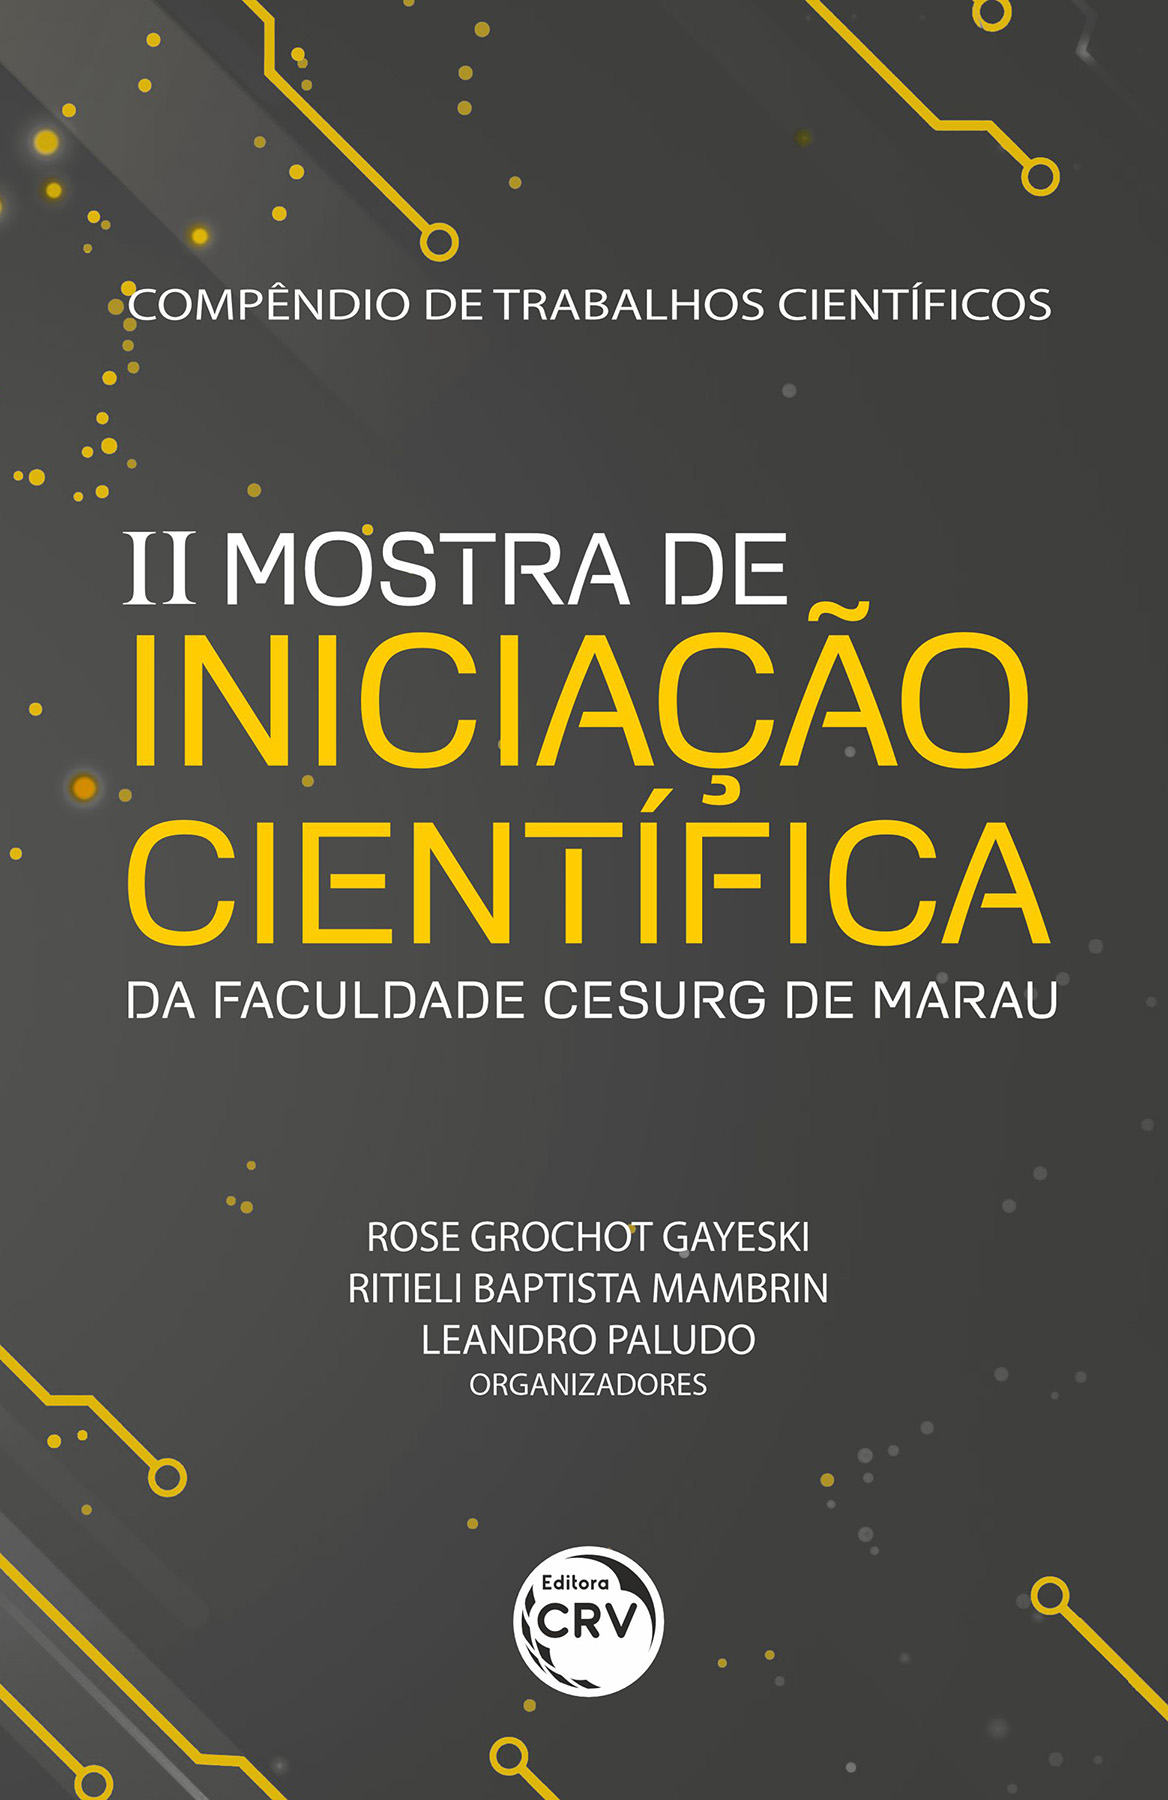 Capa do livro: Compêndio de trabalhos científicos:<br>II Mostra de iniciação científica da faculdade CESURG de Marau